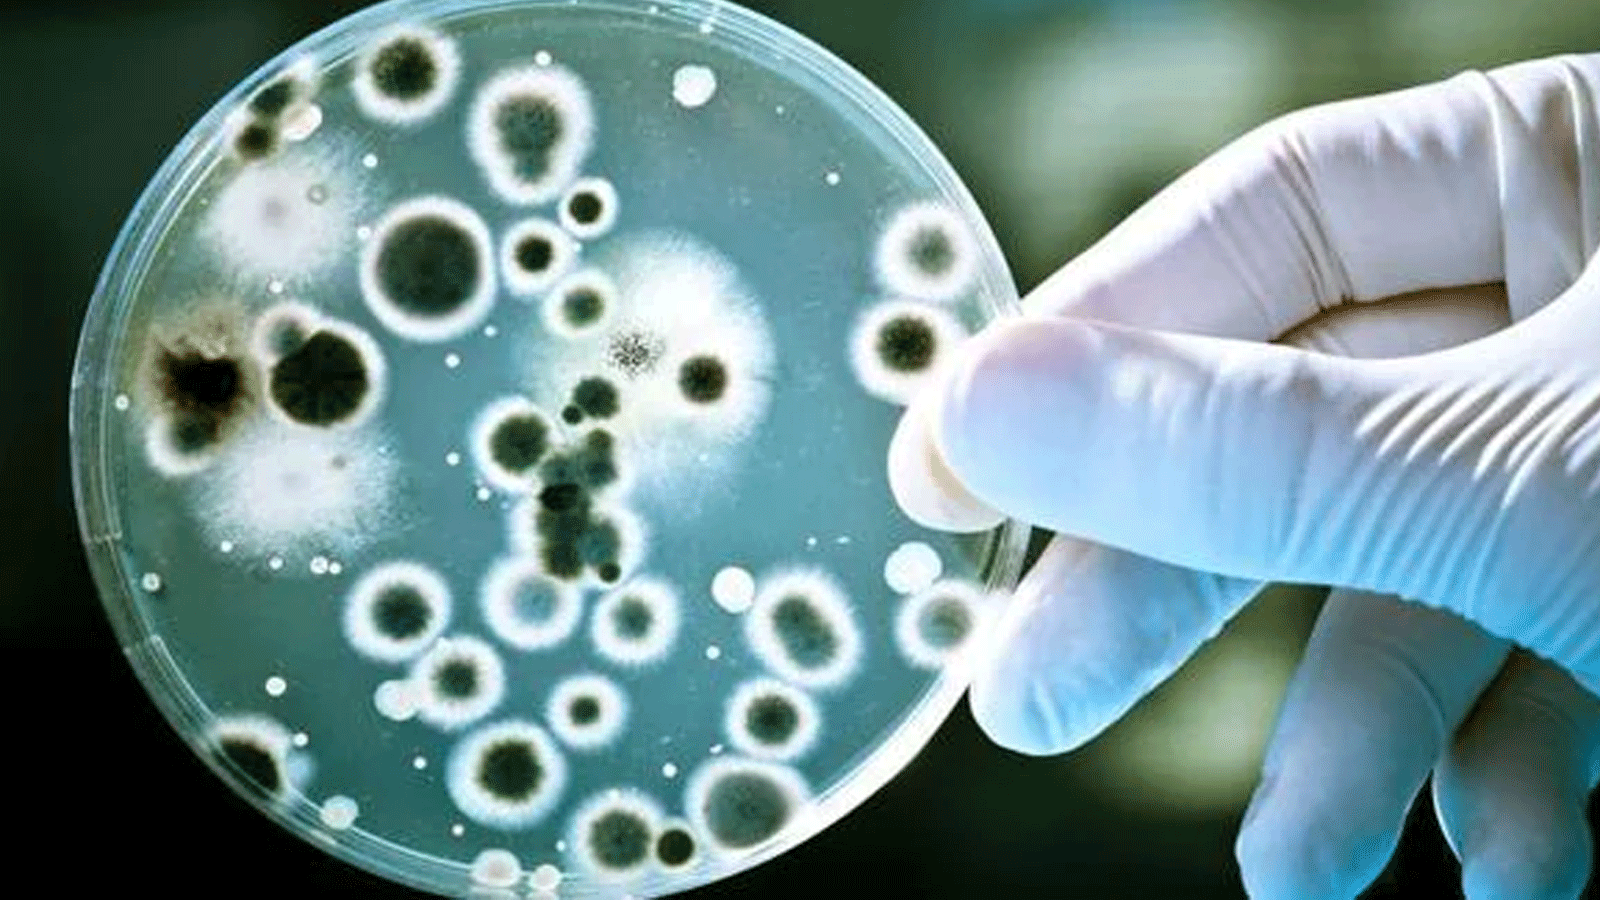  بكتيريا الأمعاء غير المتوازنة مسؤولة عن العديد من الأمراض المرتبطة بتقدم العمر